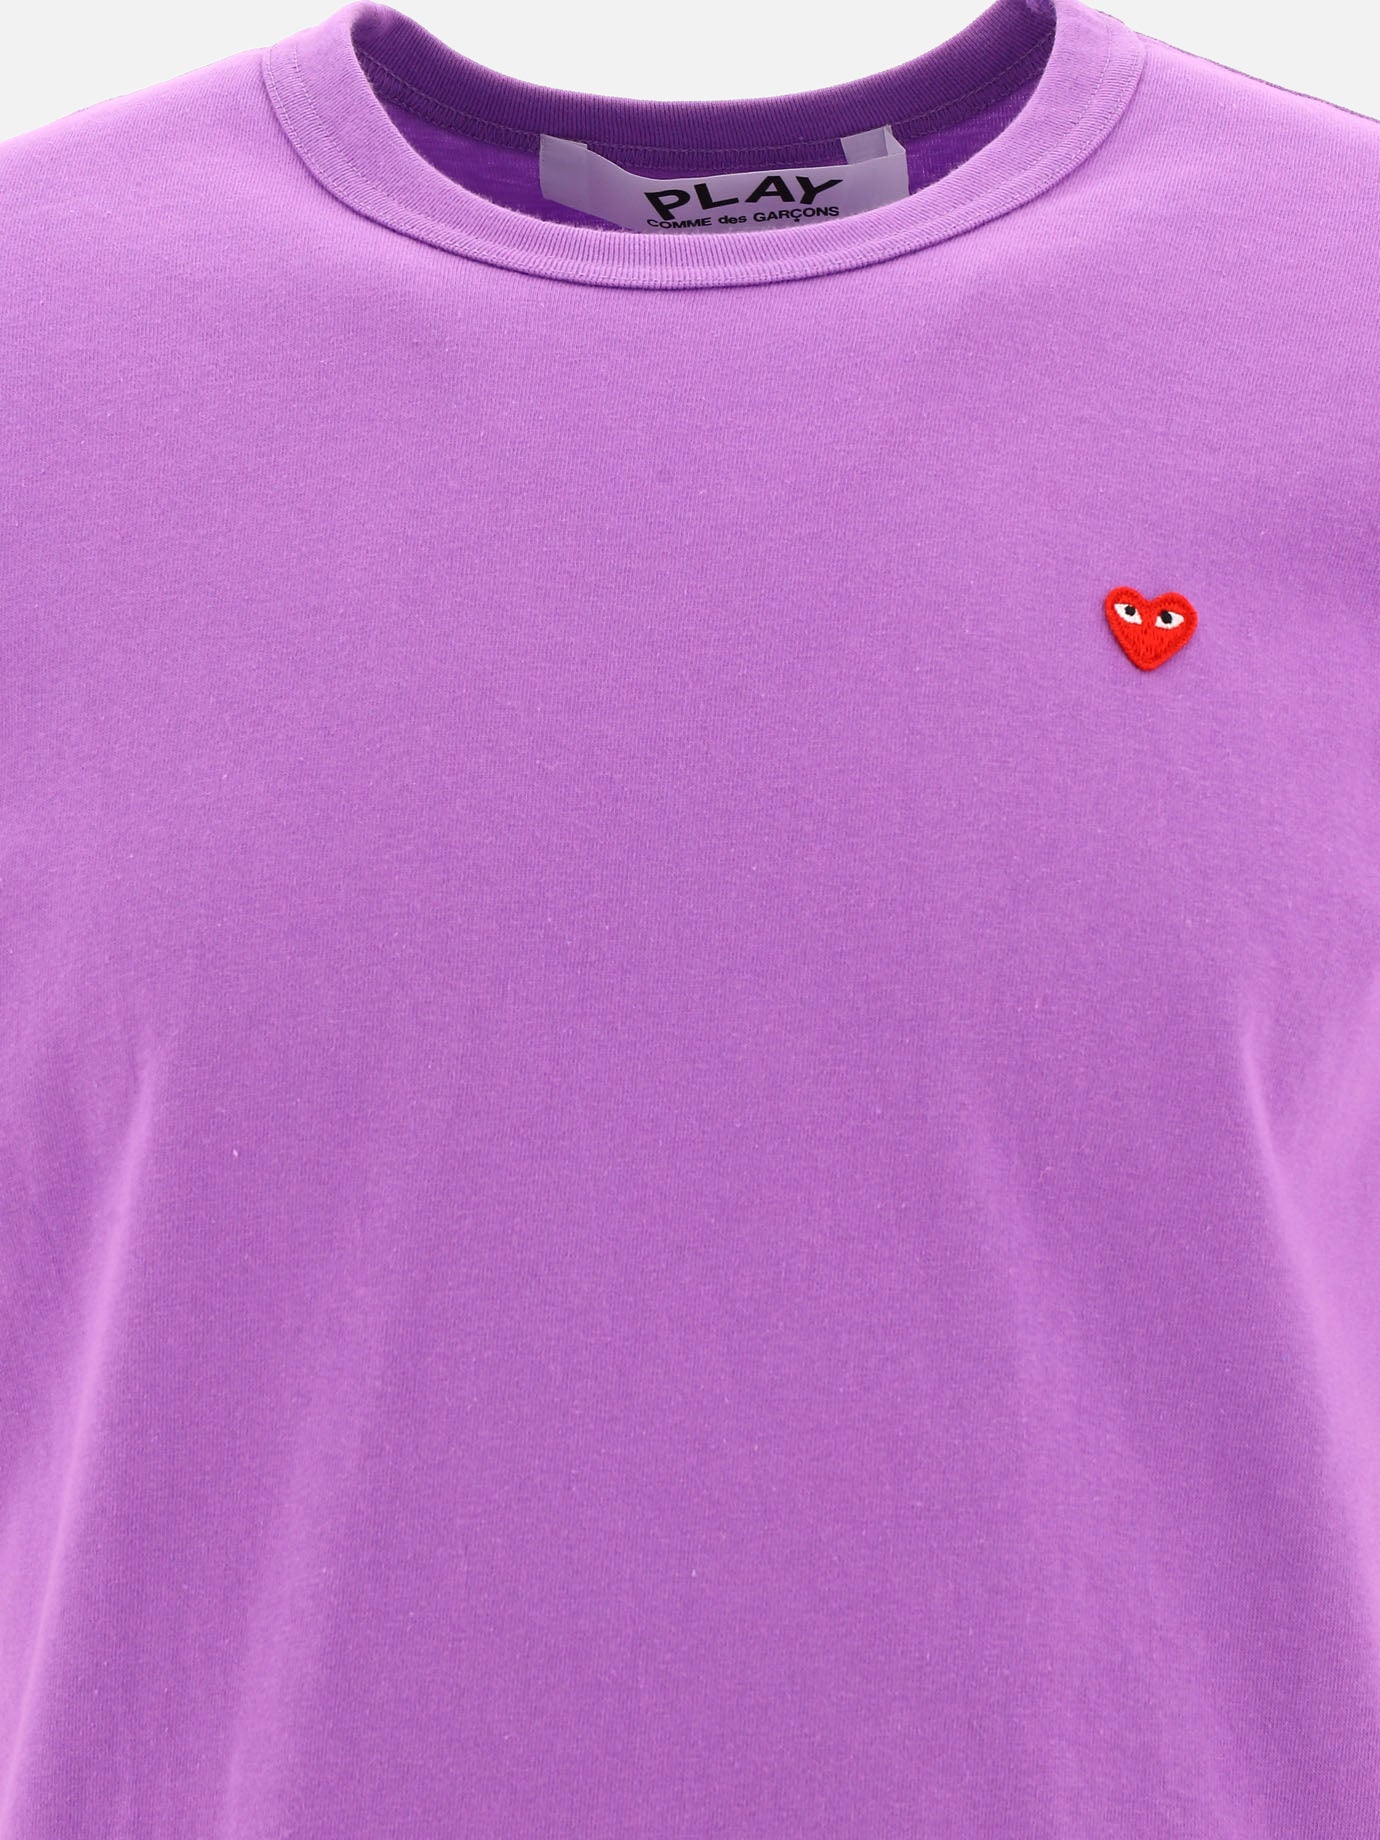 "Small Heart" t-shirt